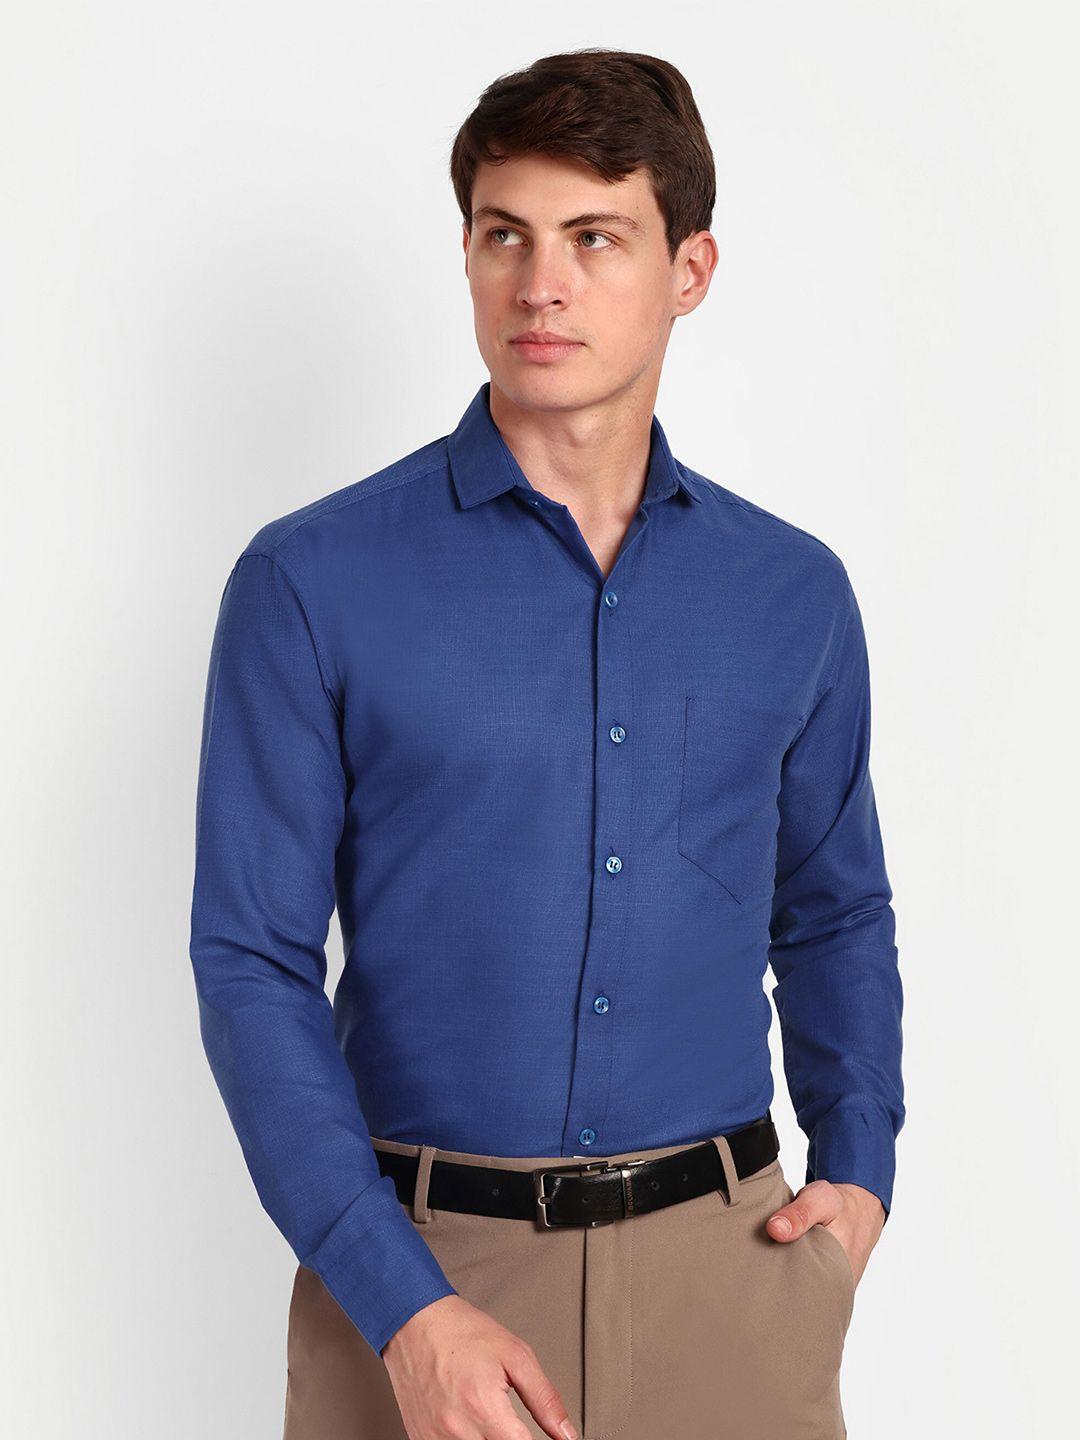 colorwings men blue comfort semi sheer formal shirt